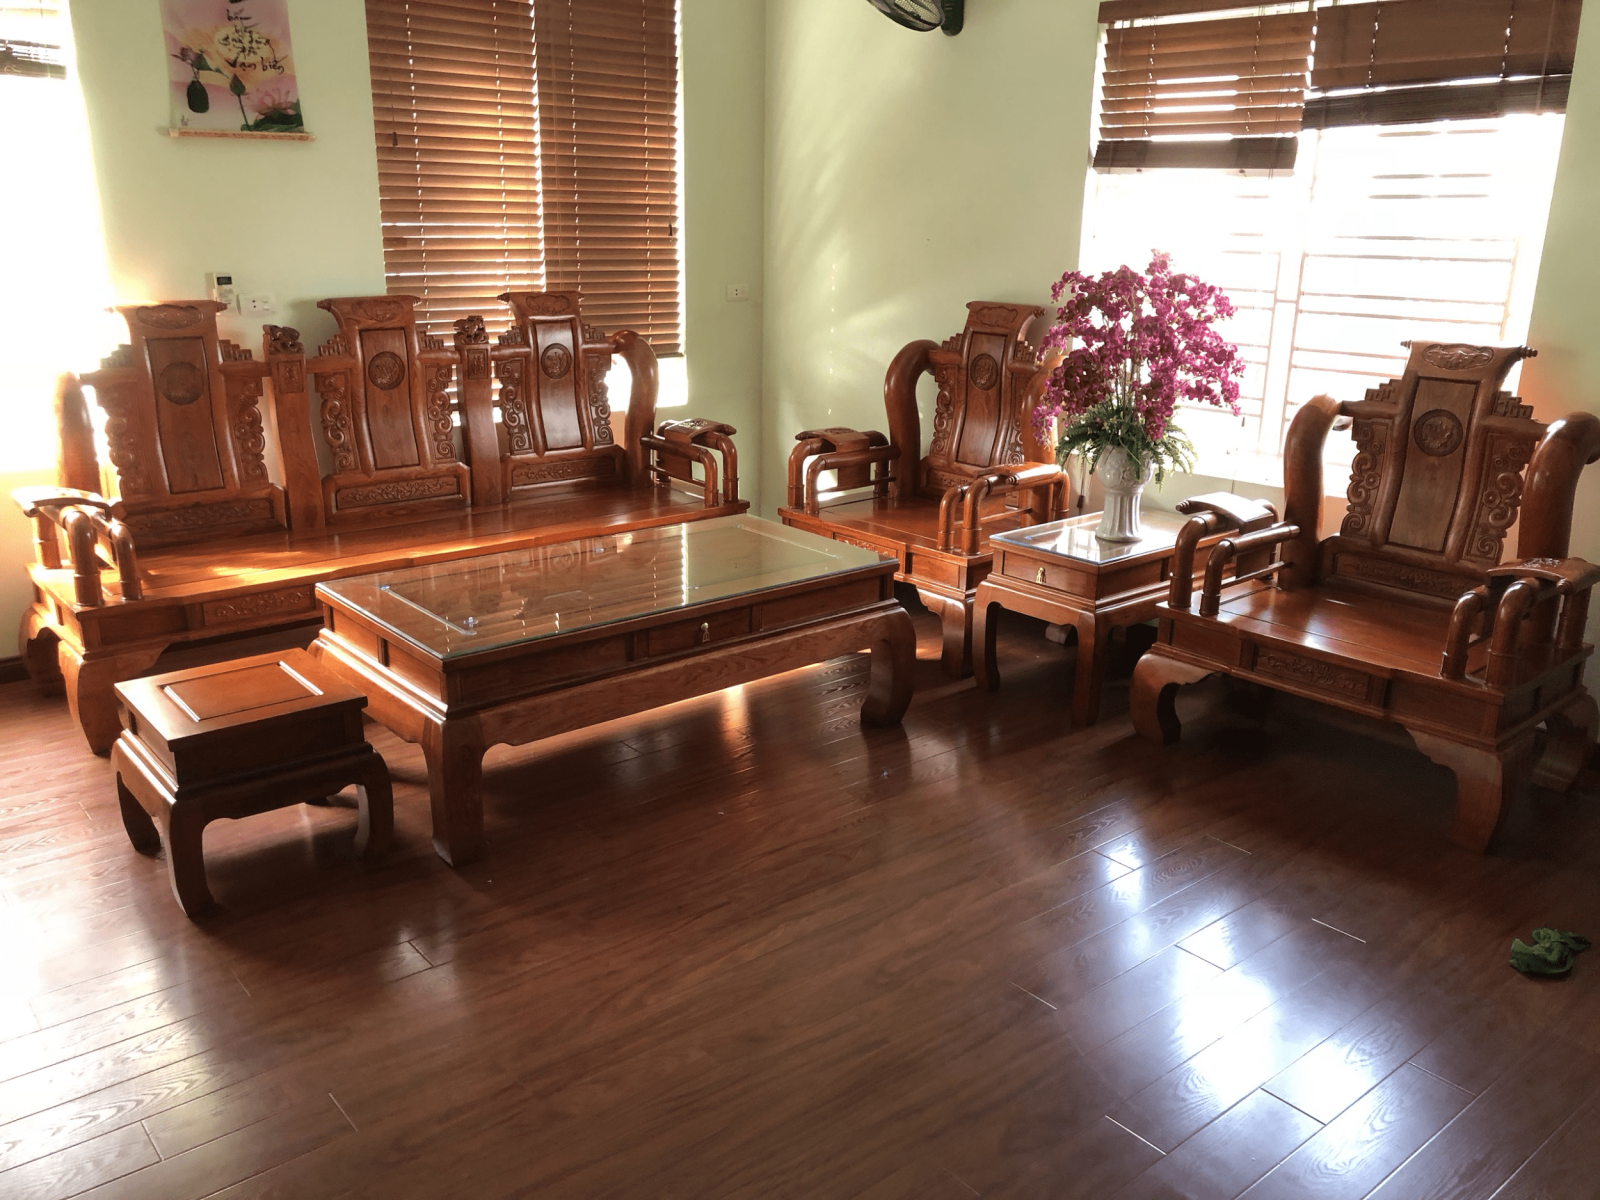 Chọn bàn ghế phòng khách gỗ hương: Gỗ hương là loại vật liệu đẹp và sang trọng, và đã được sử dụng trong nhiều thiết kế đồ nội thất. Hãy đến với chúng tôi để tìm hiểu về các mẫu bàn ghế phòng khách gỗ hương đẹp, chất lượng và bền bỉ. Bộ sưu tập của chúng tôi đảm bảo sẽ làm hài lòng mọi khách hàng khó tính nhất.